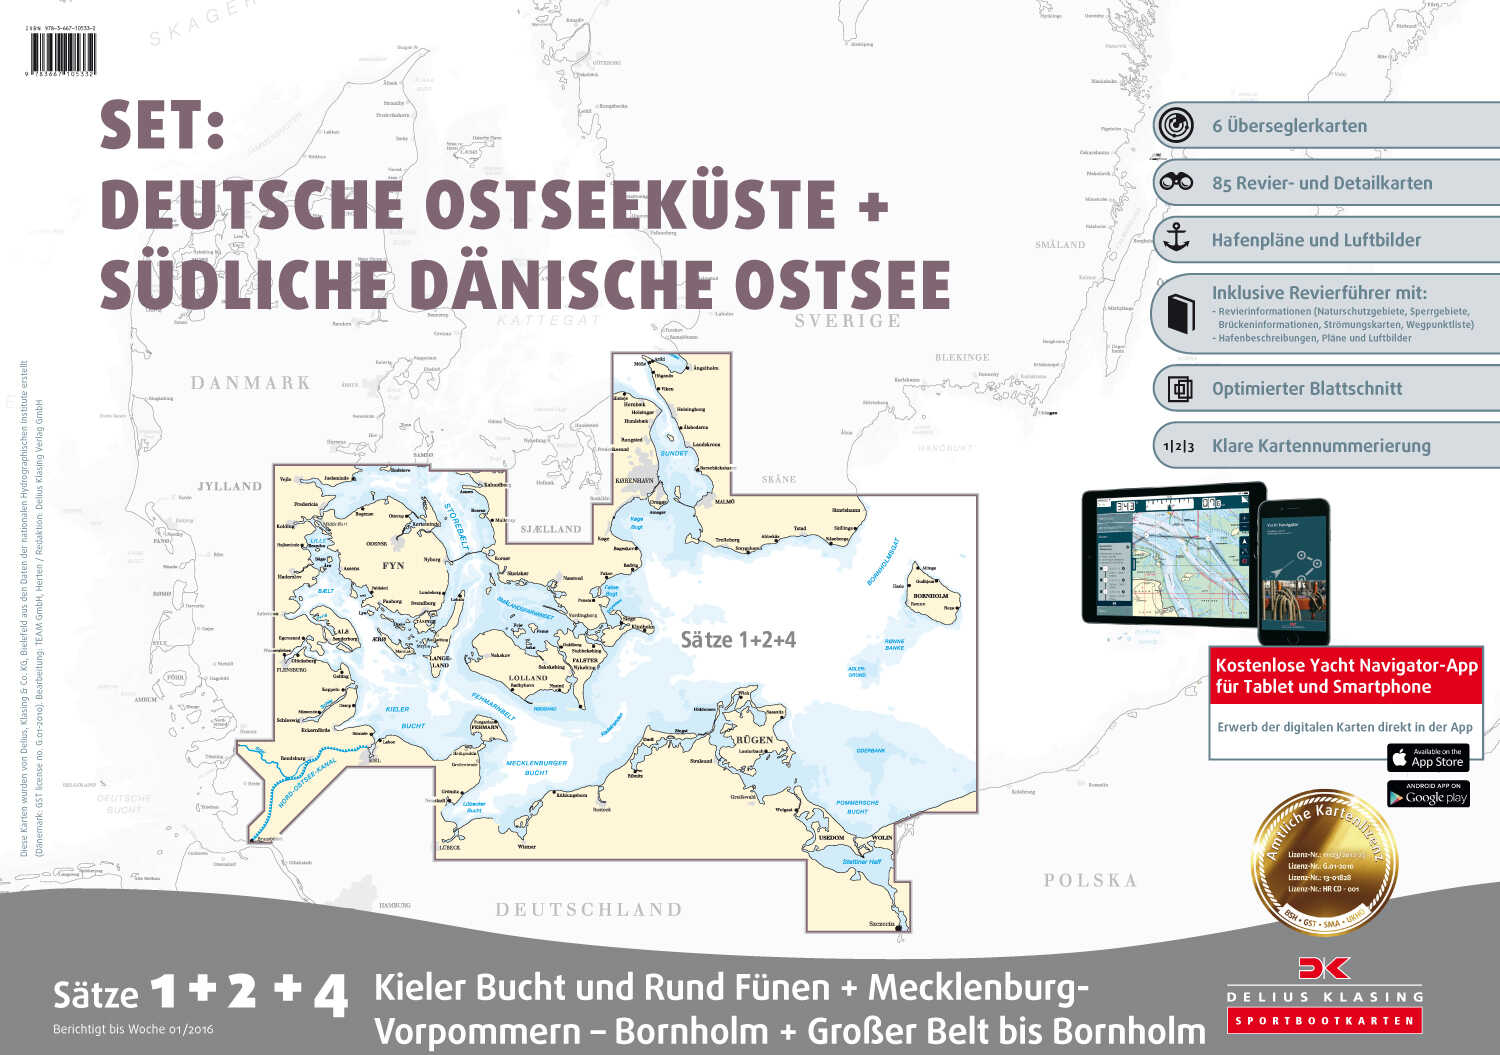 Delius Klasing Sportbootkarten Satz 01+02+04 Set: Deutsche Ostsee + Südliche dänische Ostsee